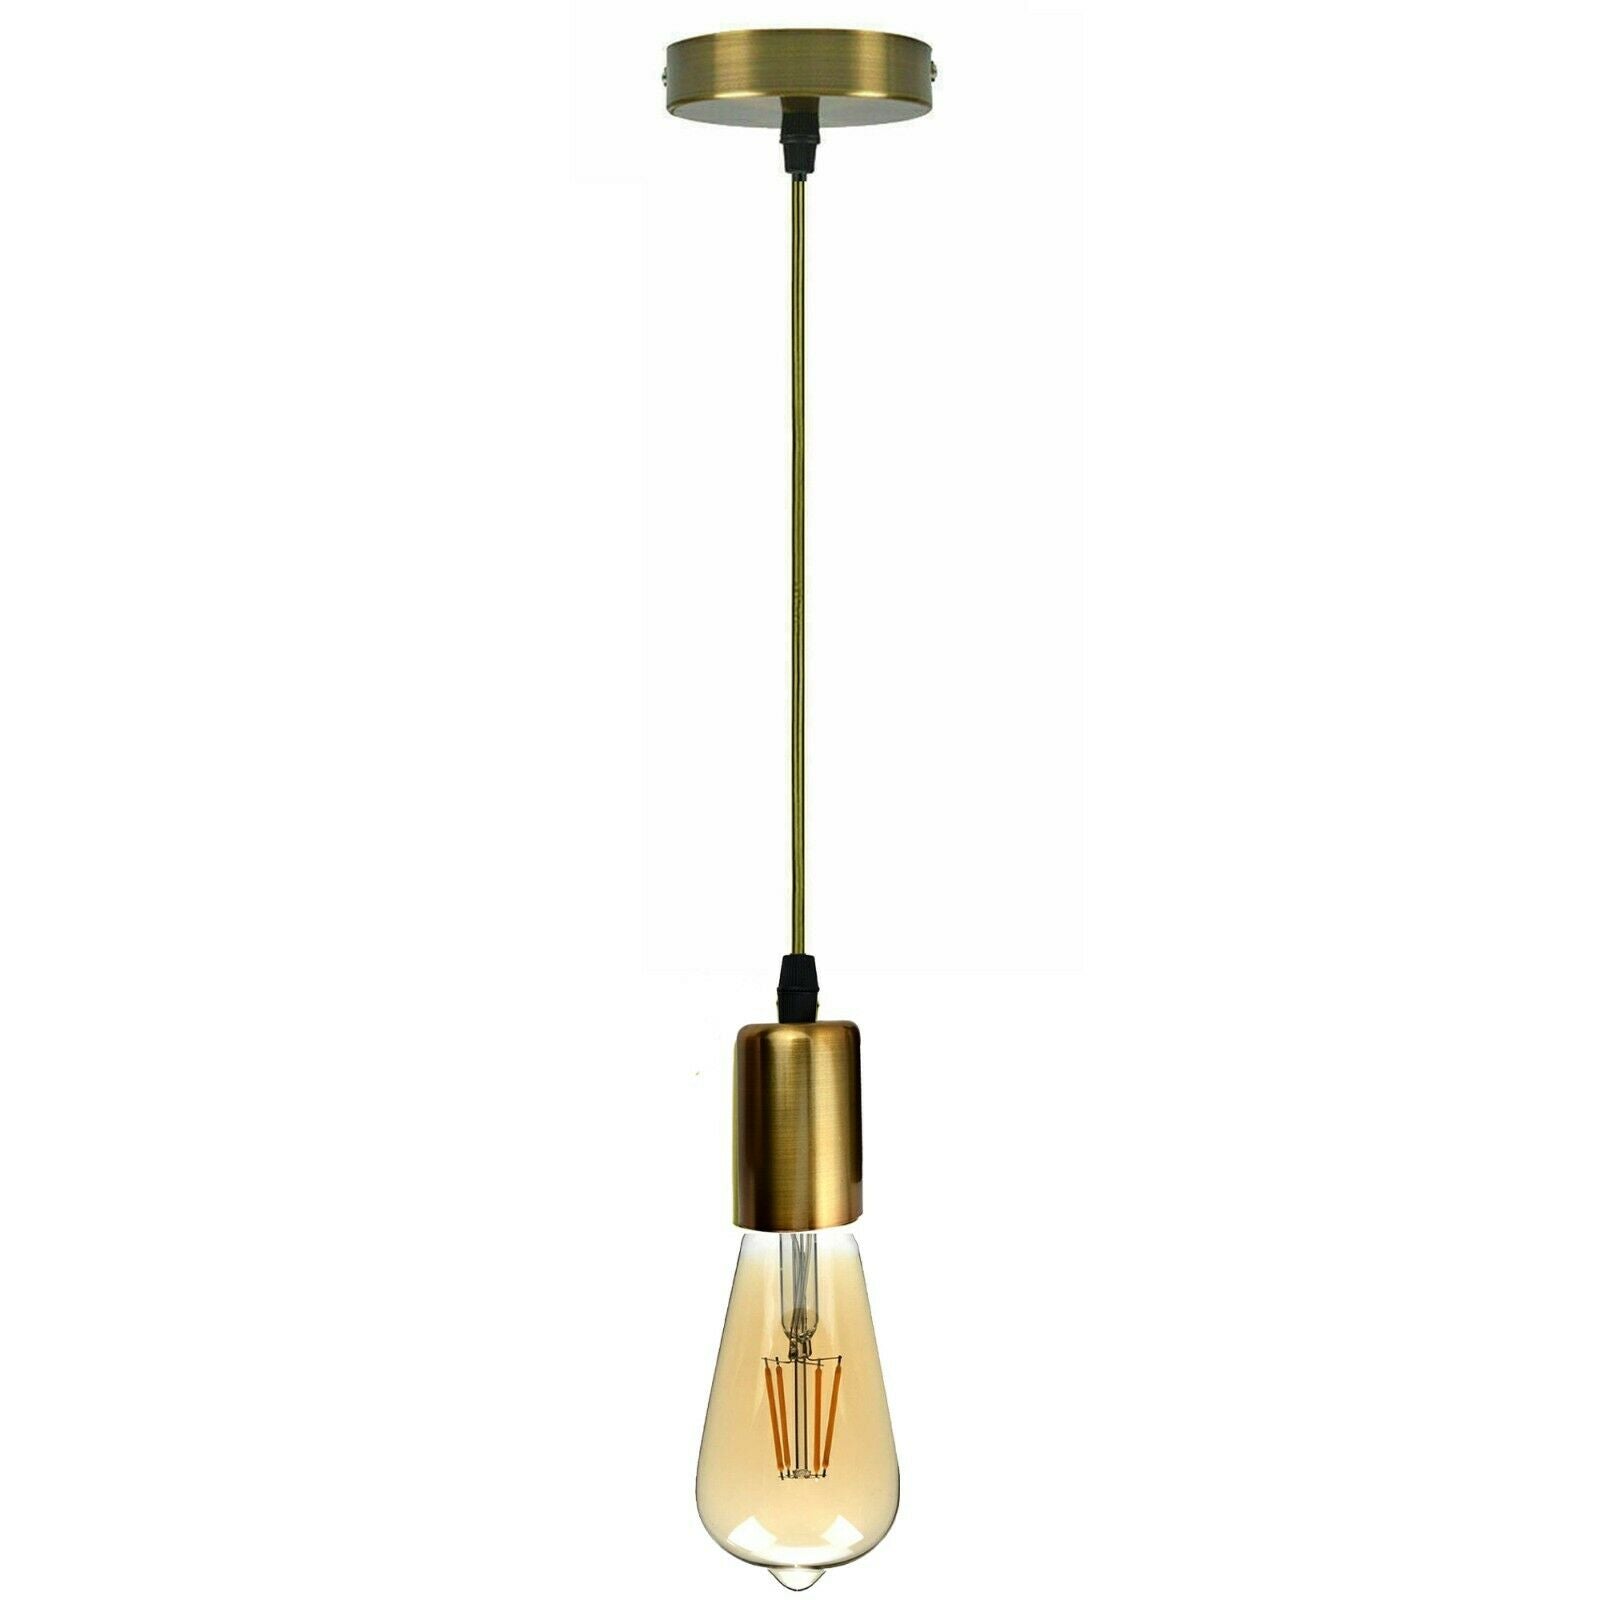 Vintage E27 Fitting Suspension Light Base Yellow Brass Lamp Holder Ceiling Pendant Lights~3639 - LEDSone UK Ltd